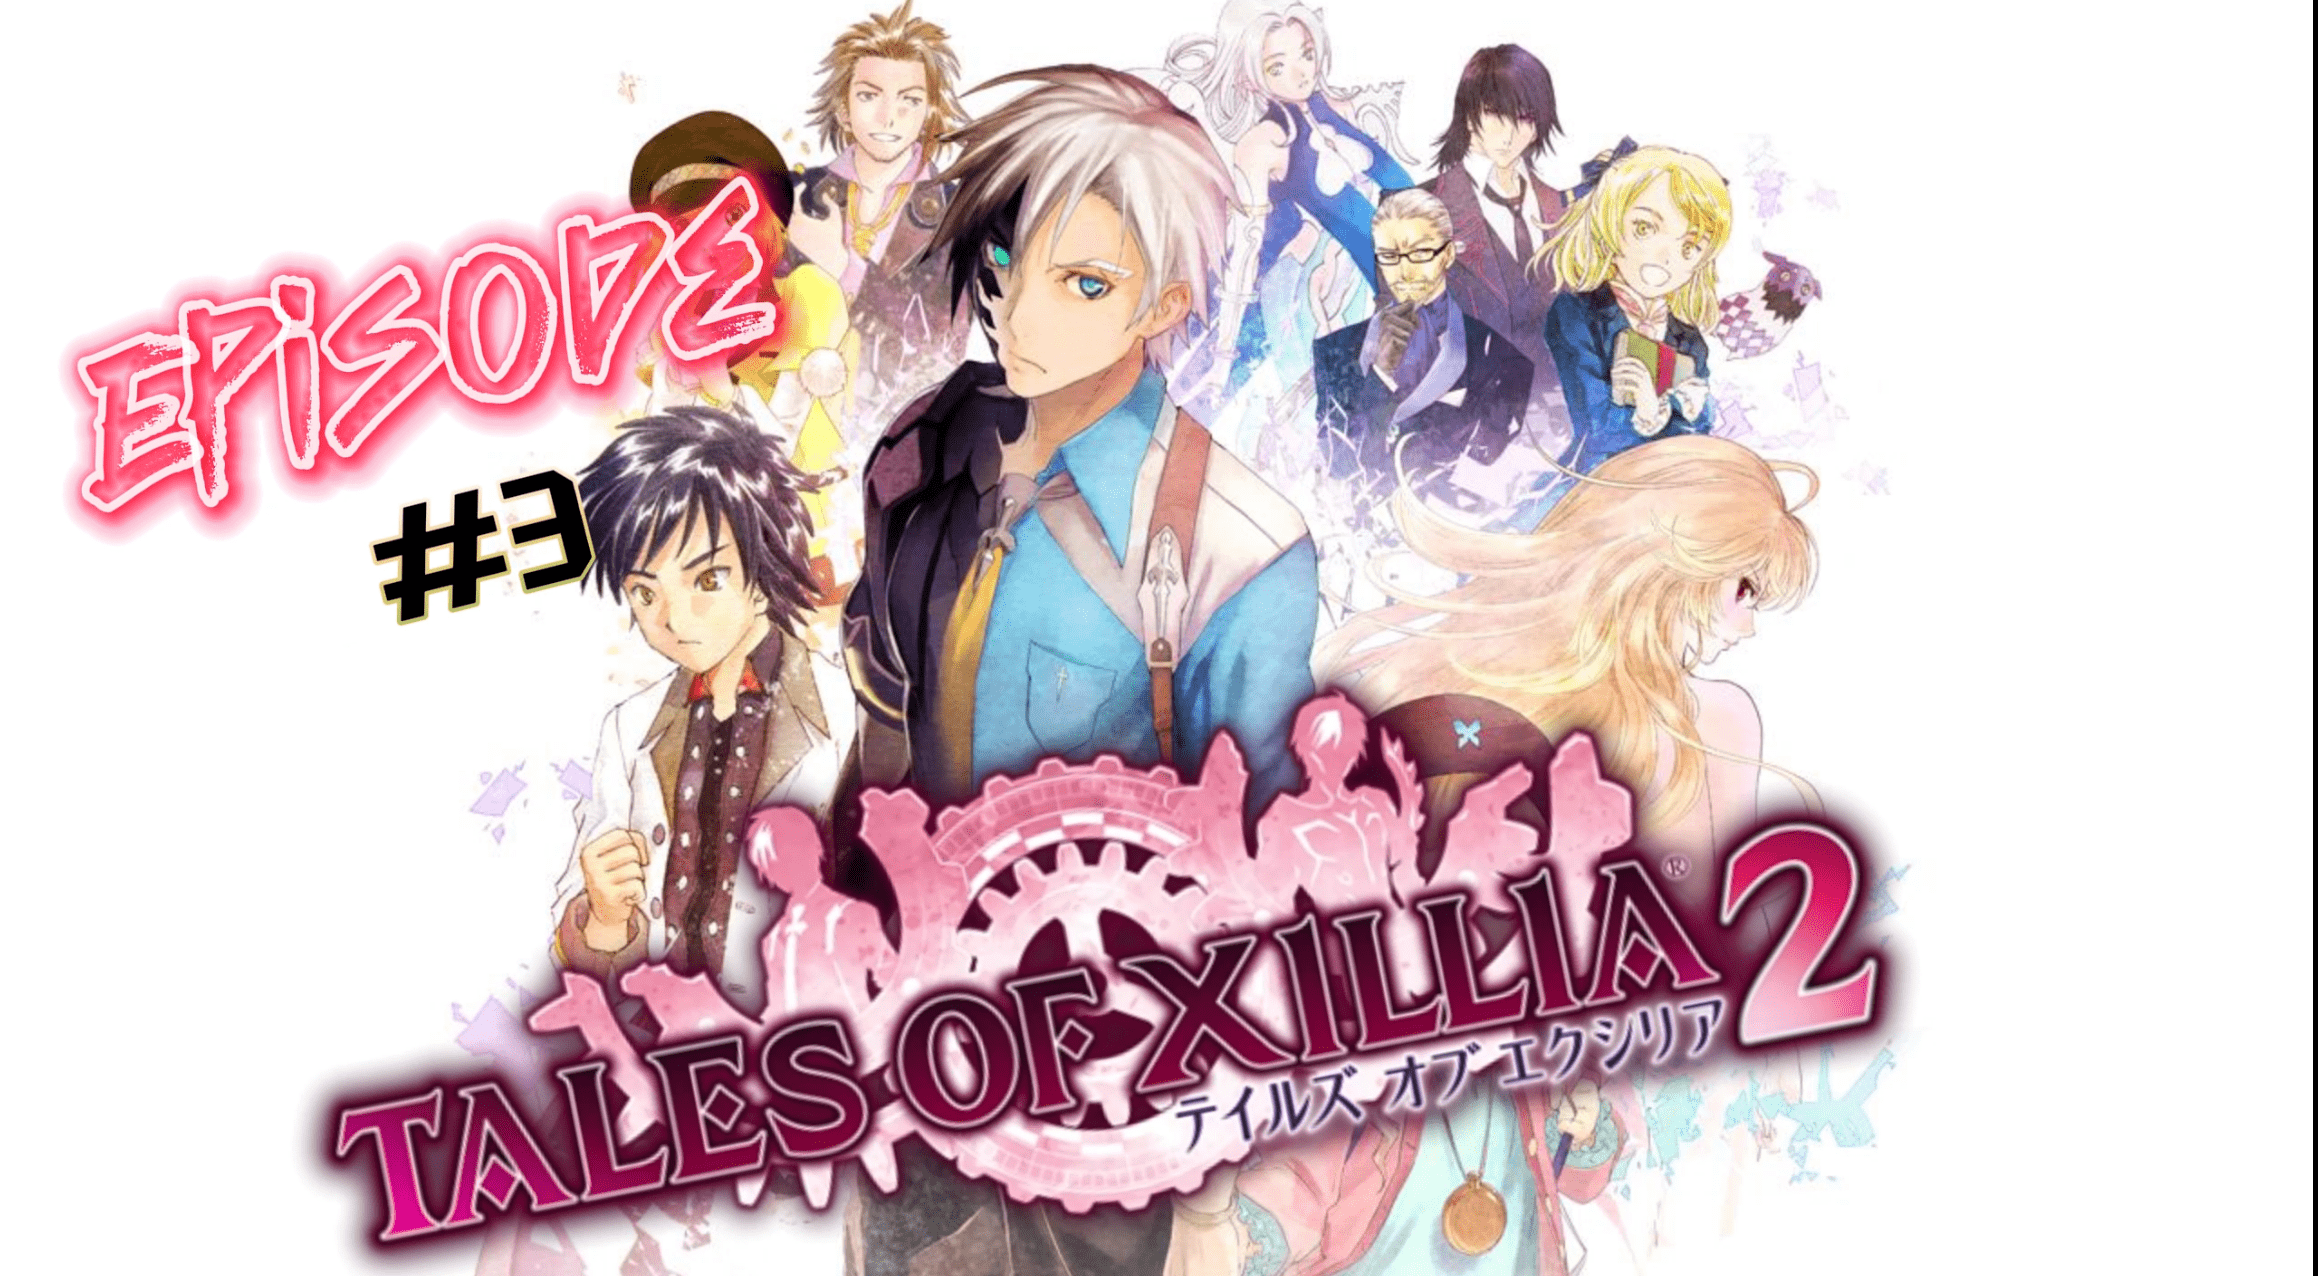 Tales of Xillia 2 | PART 3 | PS3 | ПОЛНОЕ ПРОХОЖДЕНИЕ